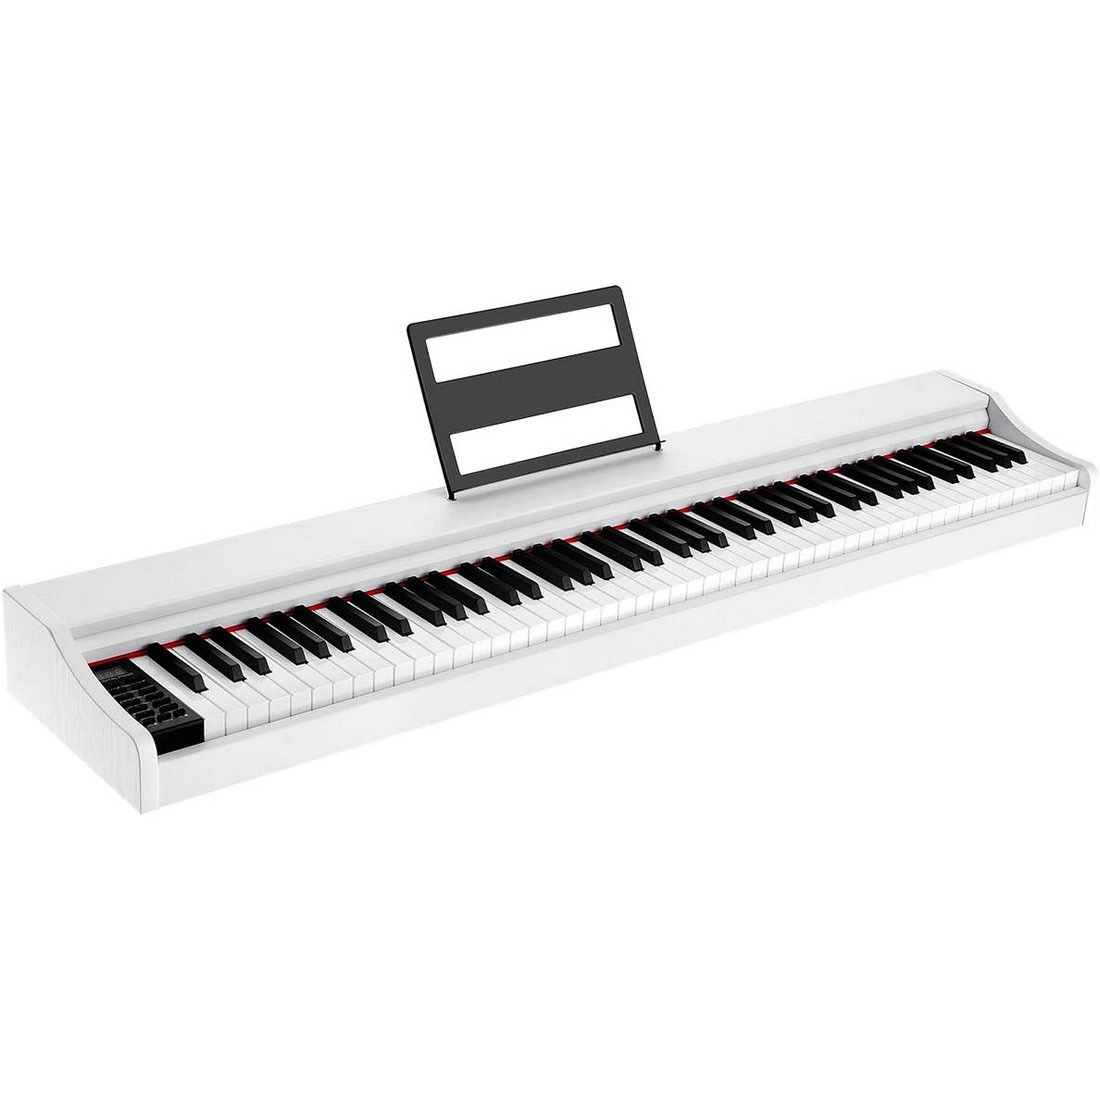 電子ピアノ ホワイト 88鍵盤 （デジタルピアノ） フランスDREAM音源